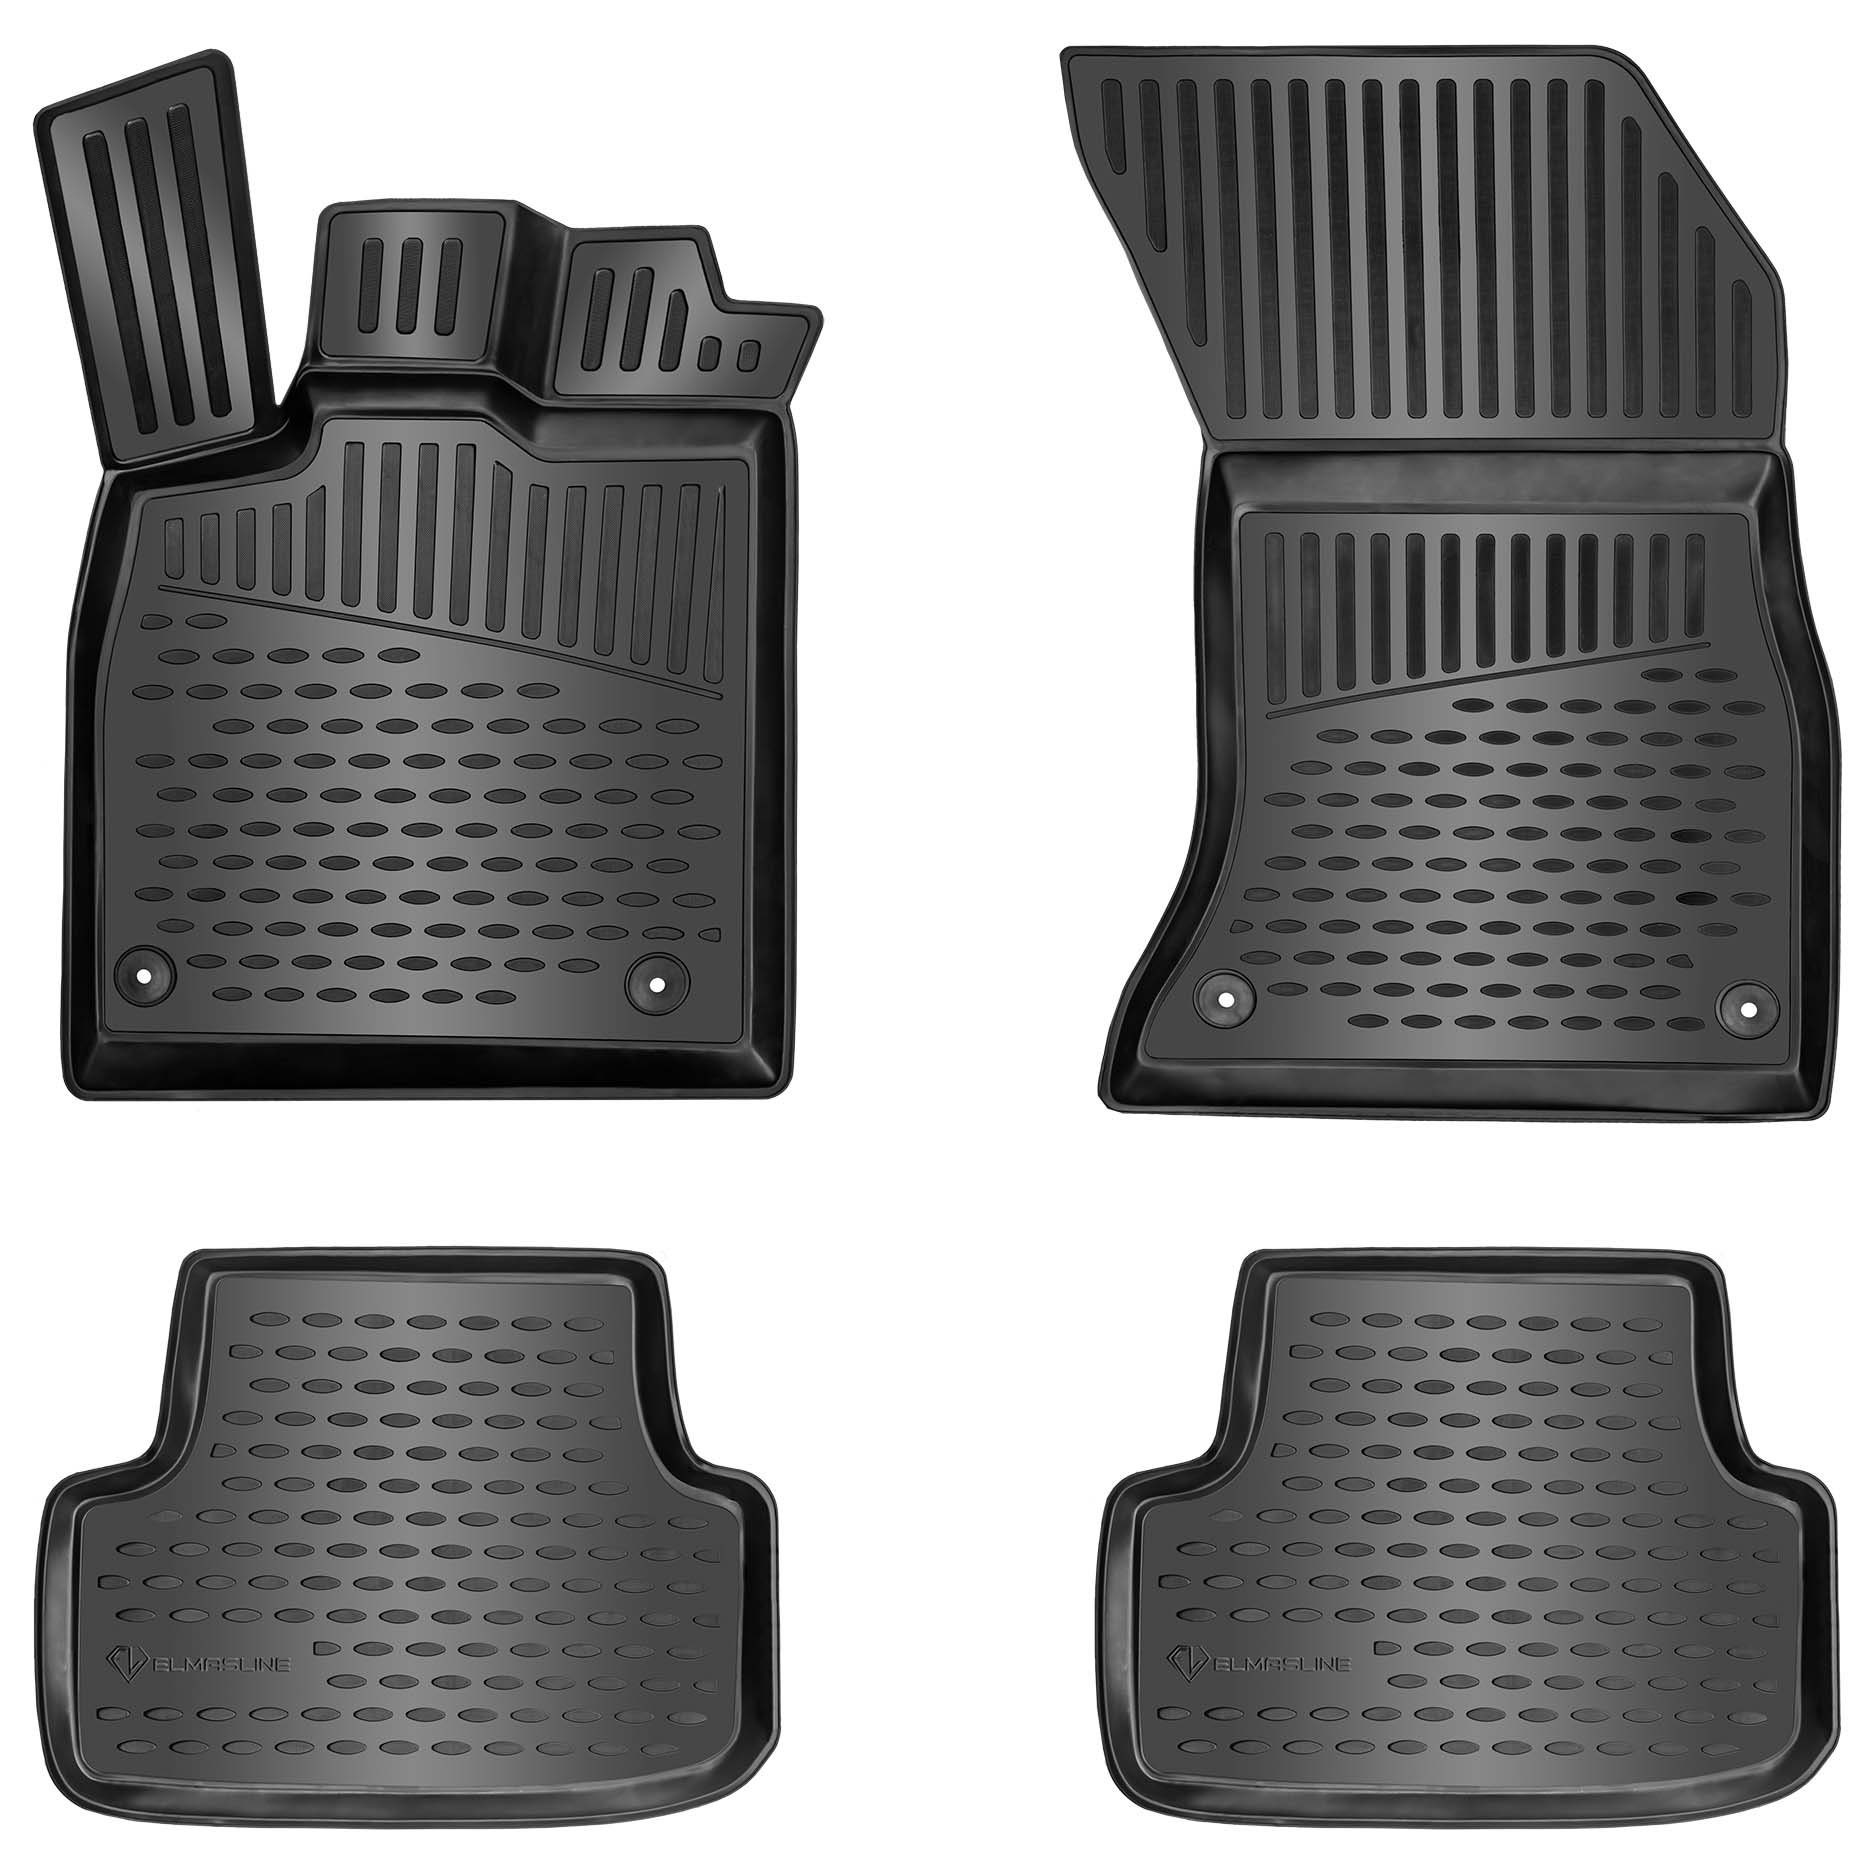 ELMASLINE Auto-Fußmatten Gummi (4 St), für NISSAN MICRA (2010-2017) K13 (4. Generation) - 3D Gummimatten mit extra hohem Rand für mehr Schutz - Passend für Baujahre:, 2010 - 2017